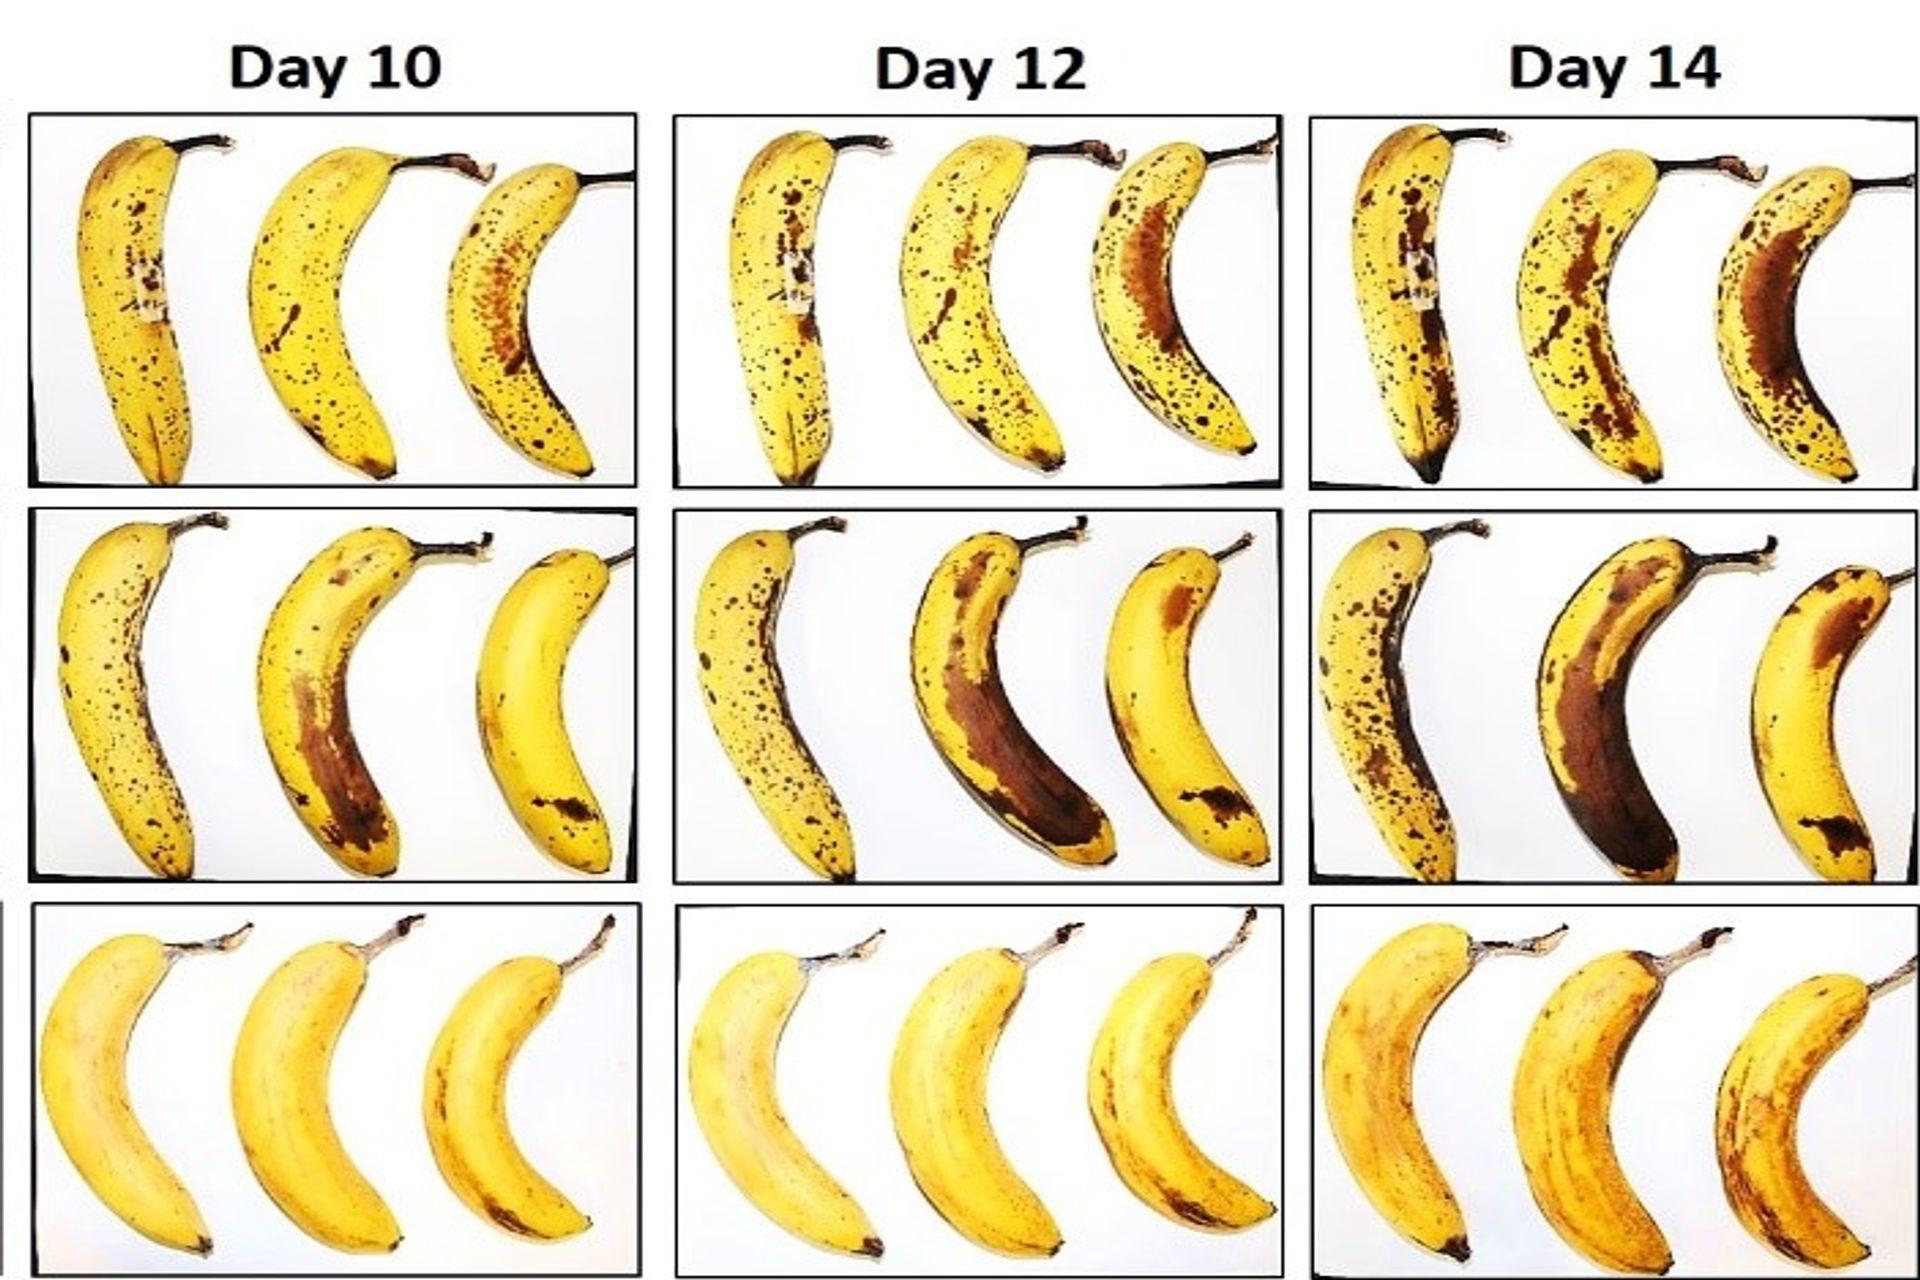 กล้วยสามลูกภายใต้ EMPA และ Lidl สวิตเซอร์แลนด์ในการทดสอบการอนุรักษ์โดยมีและไม่มีการห่อเซลลูโลสเป็นเส้นใยหลังจาก 10, 12 และ 14 วัน